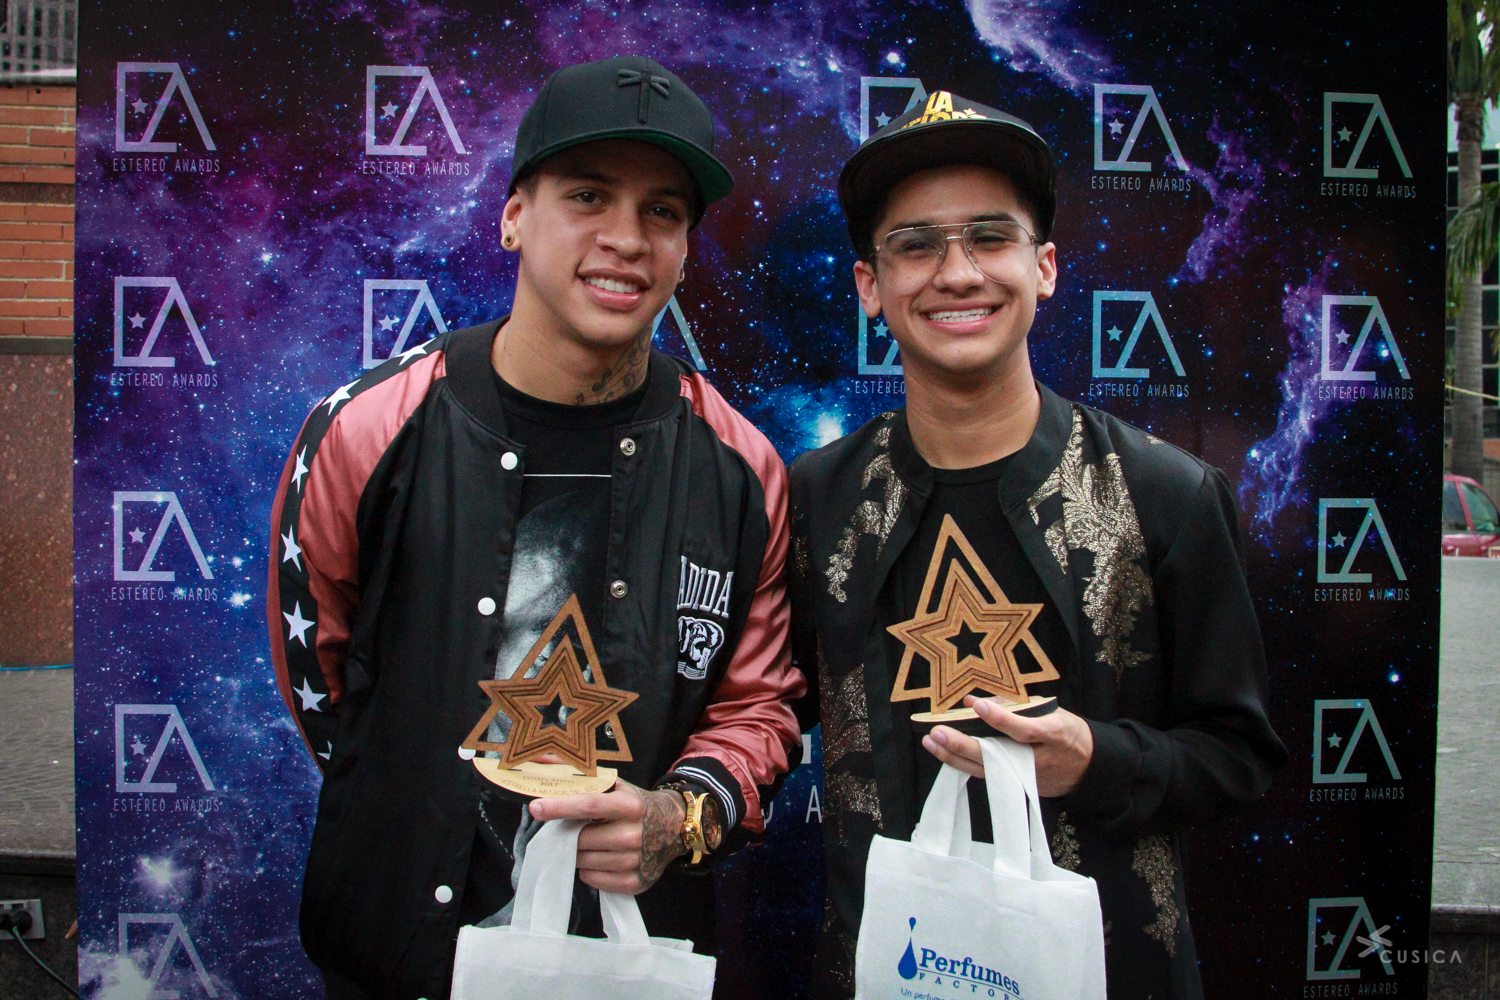 Los Estereo Awards premiaron a los artistas venezolanos